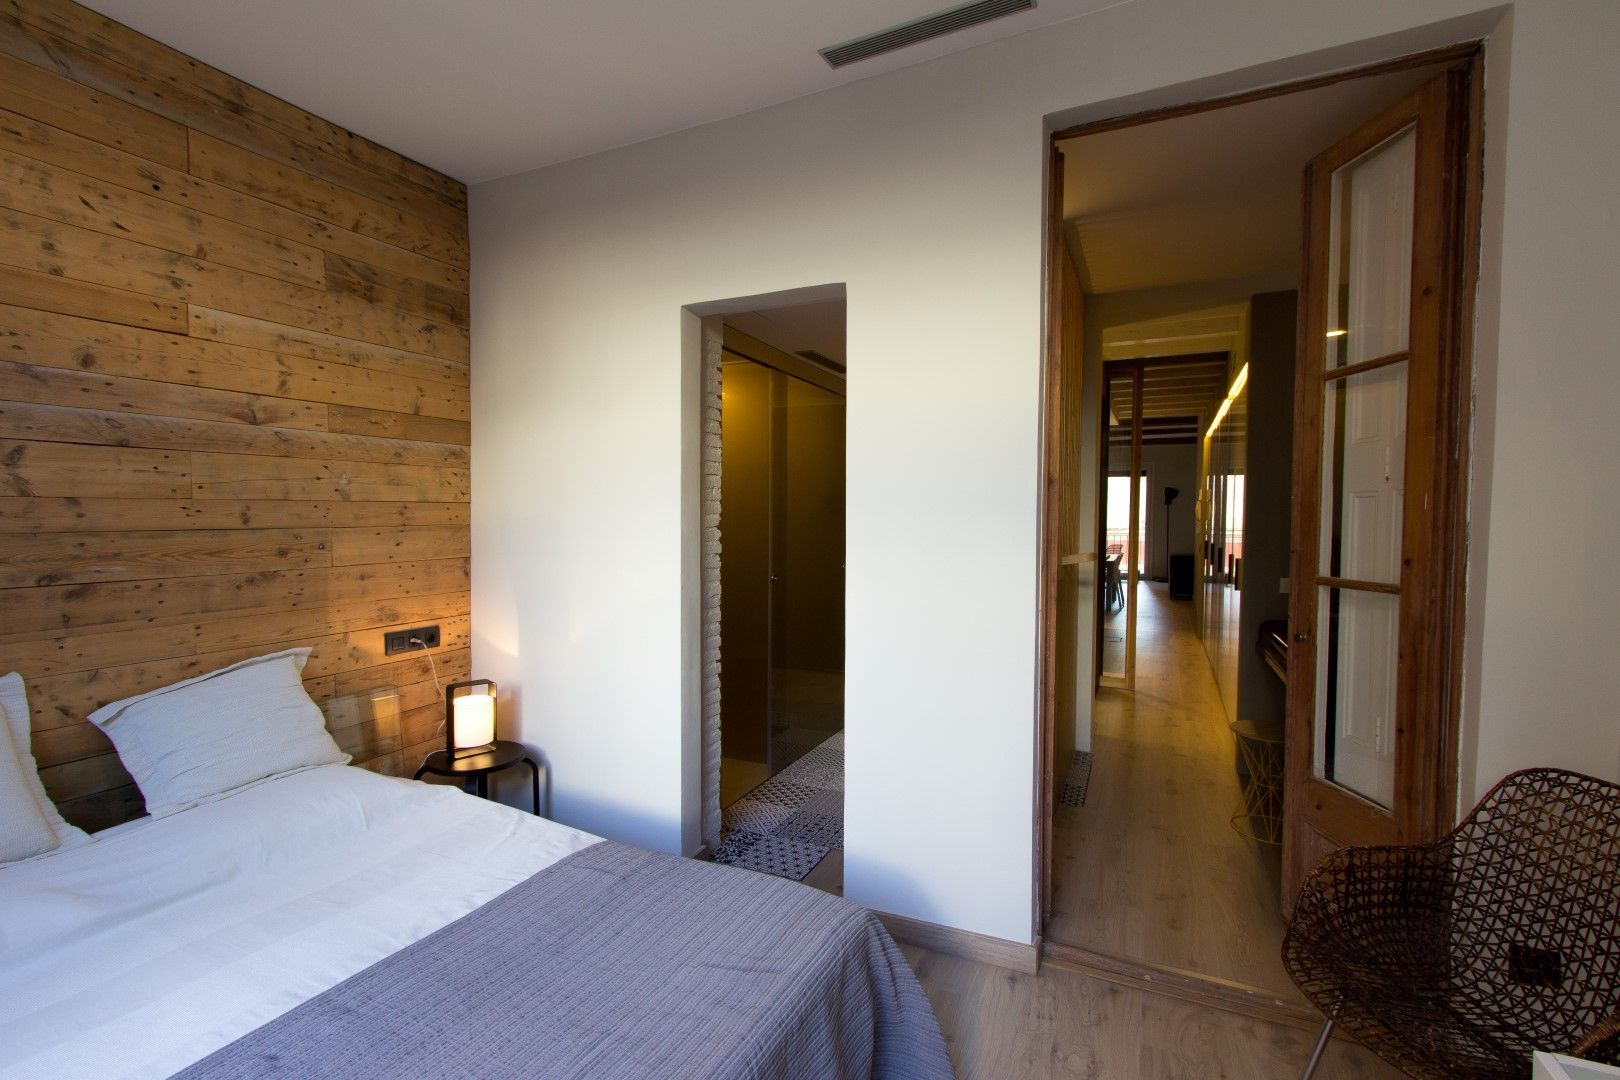 LOFT EN BARCELONA Proyecto de interiorismo para convertir un antiguo piso en un loft donde se valora la calidad del espacio, CREAPROJECTS. Interior design. CREAPROJECTS. Interior design. Modern Bedroom